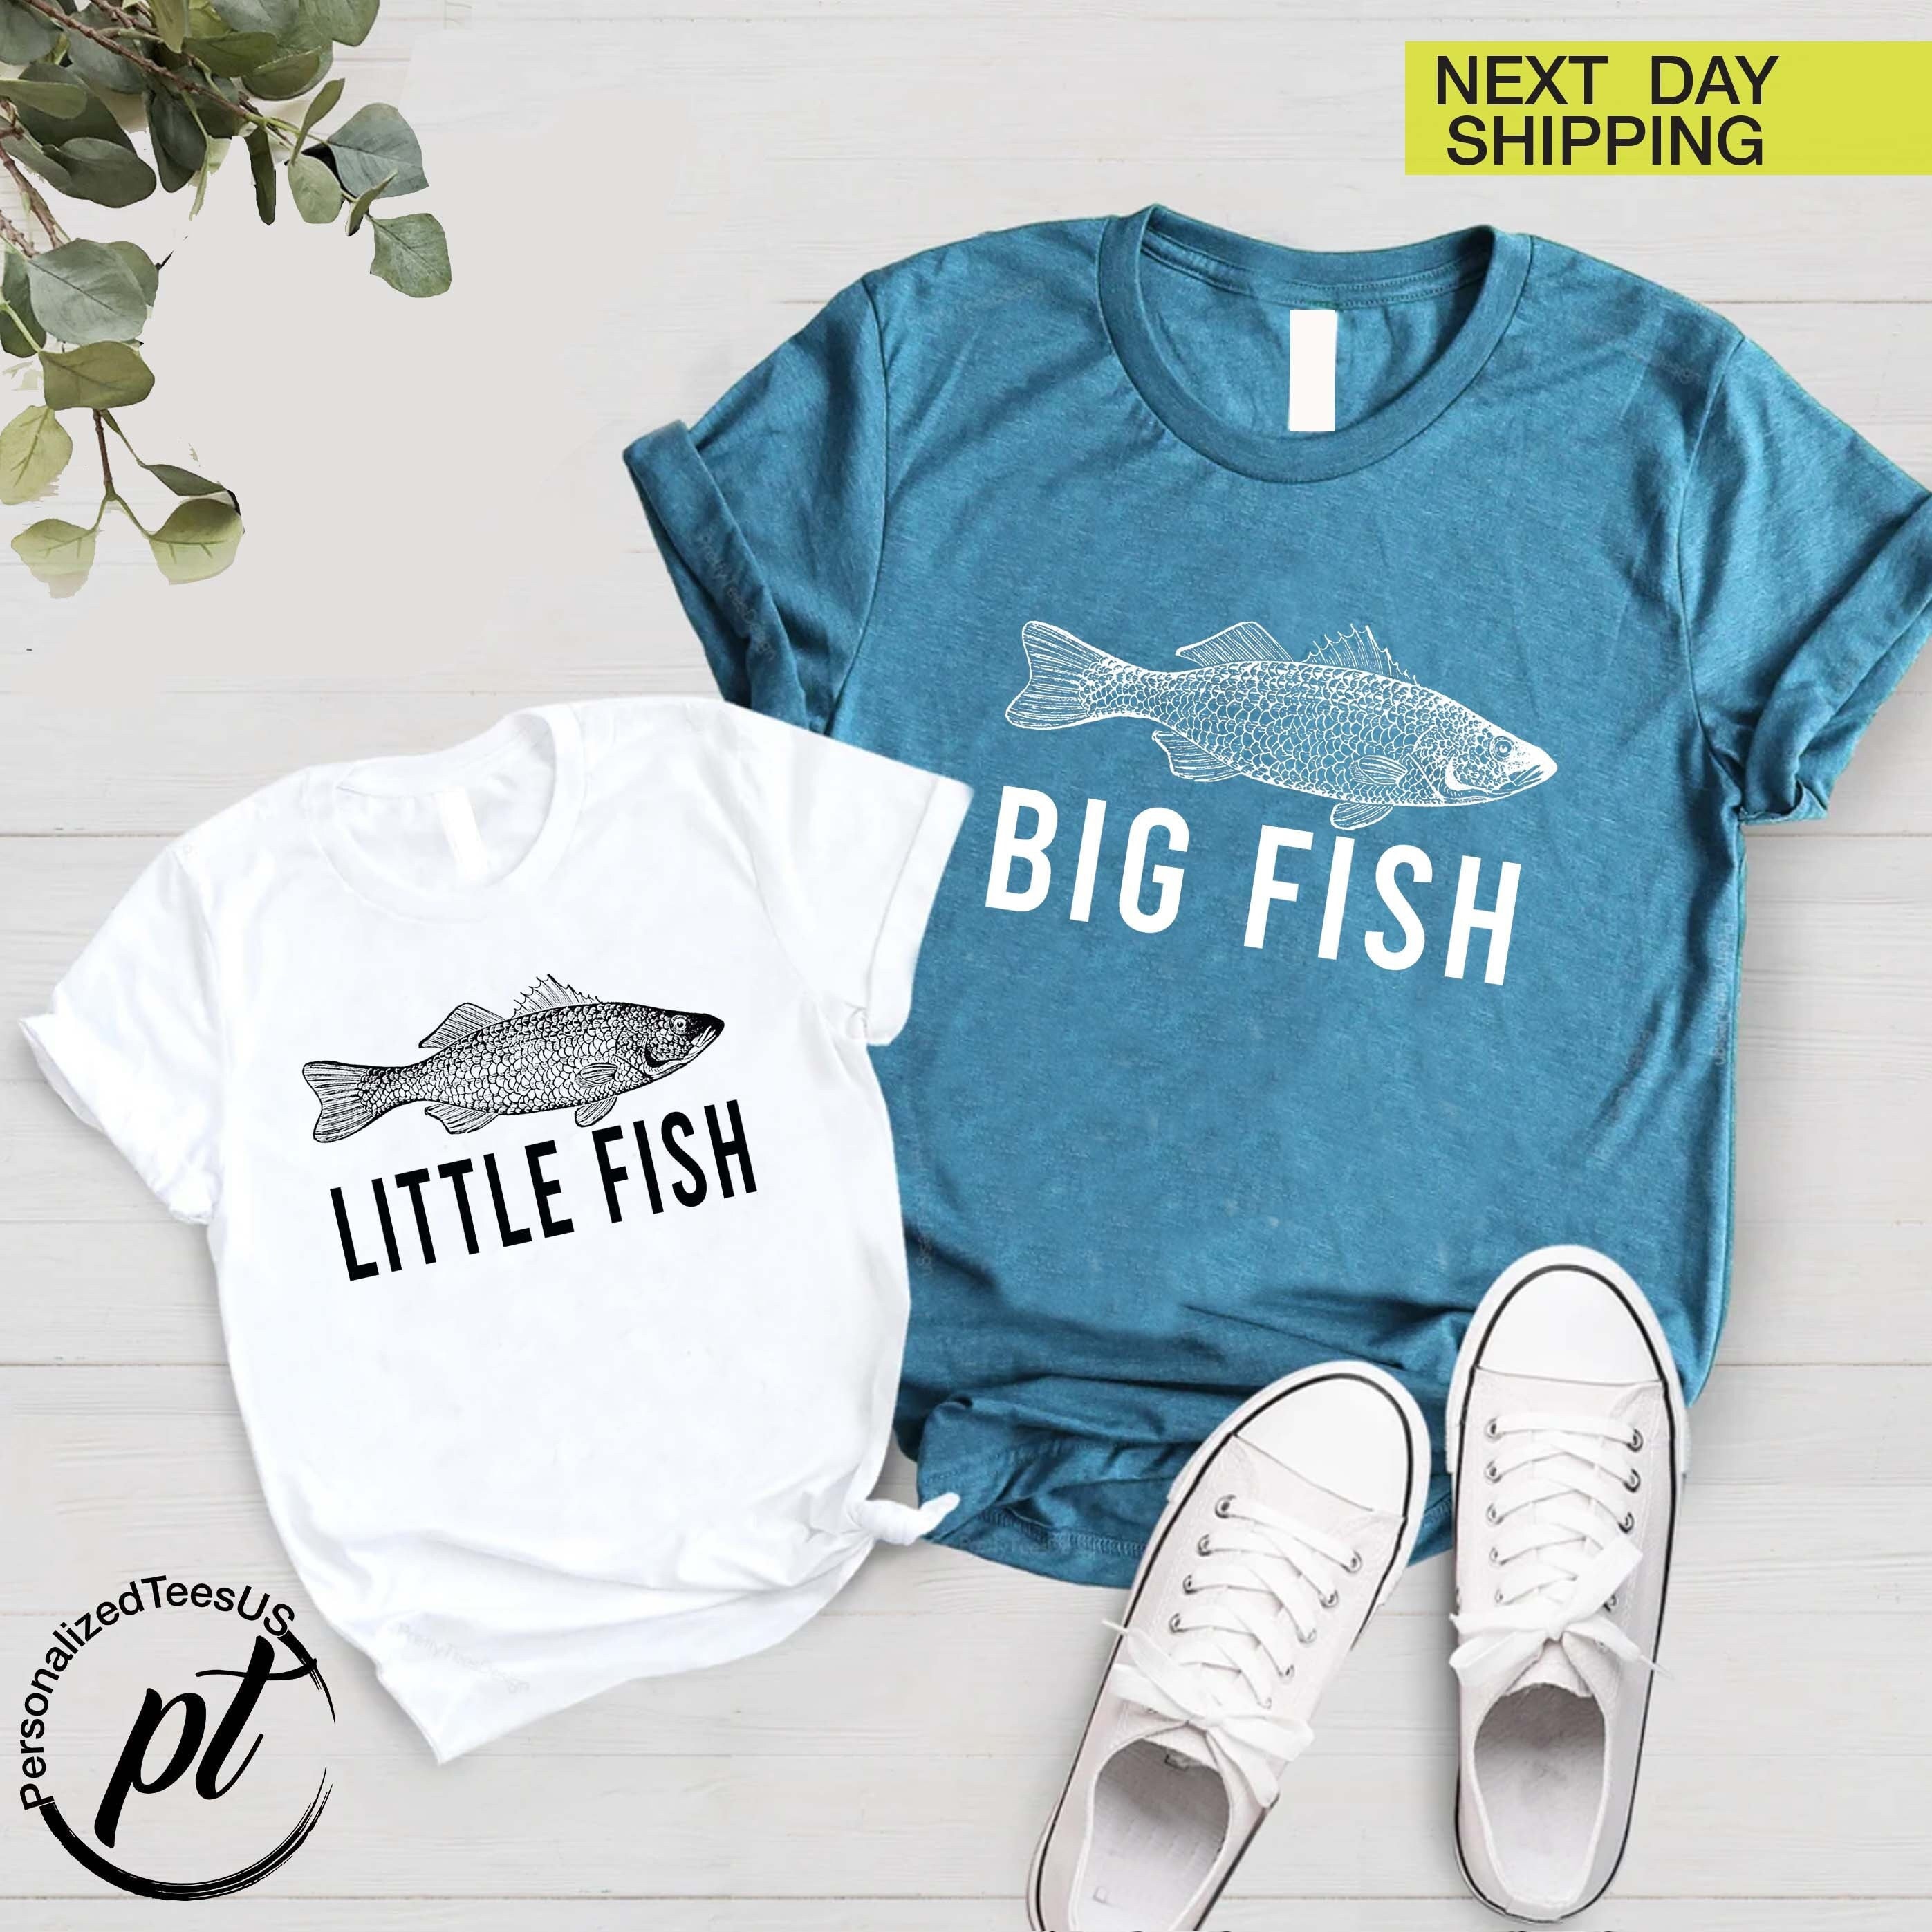 Big Fish Little Fish, Fishing Buddies Matching Shirts, Matching